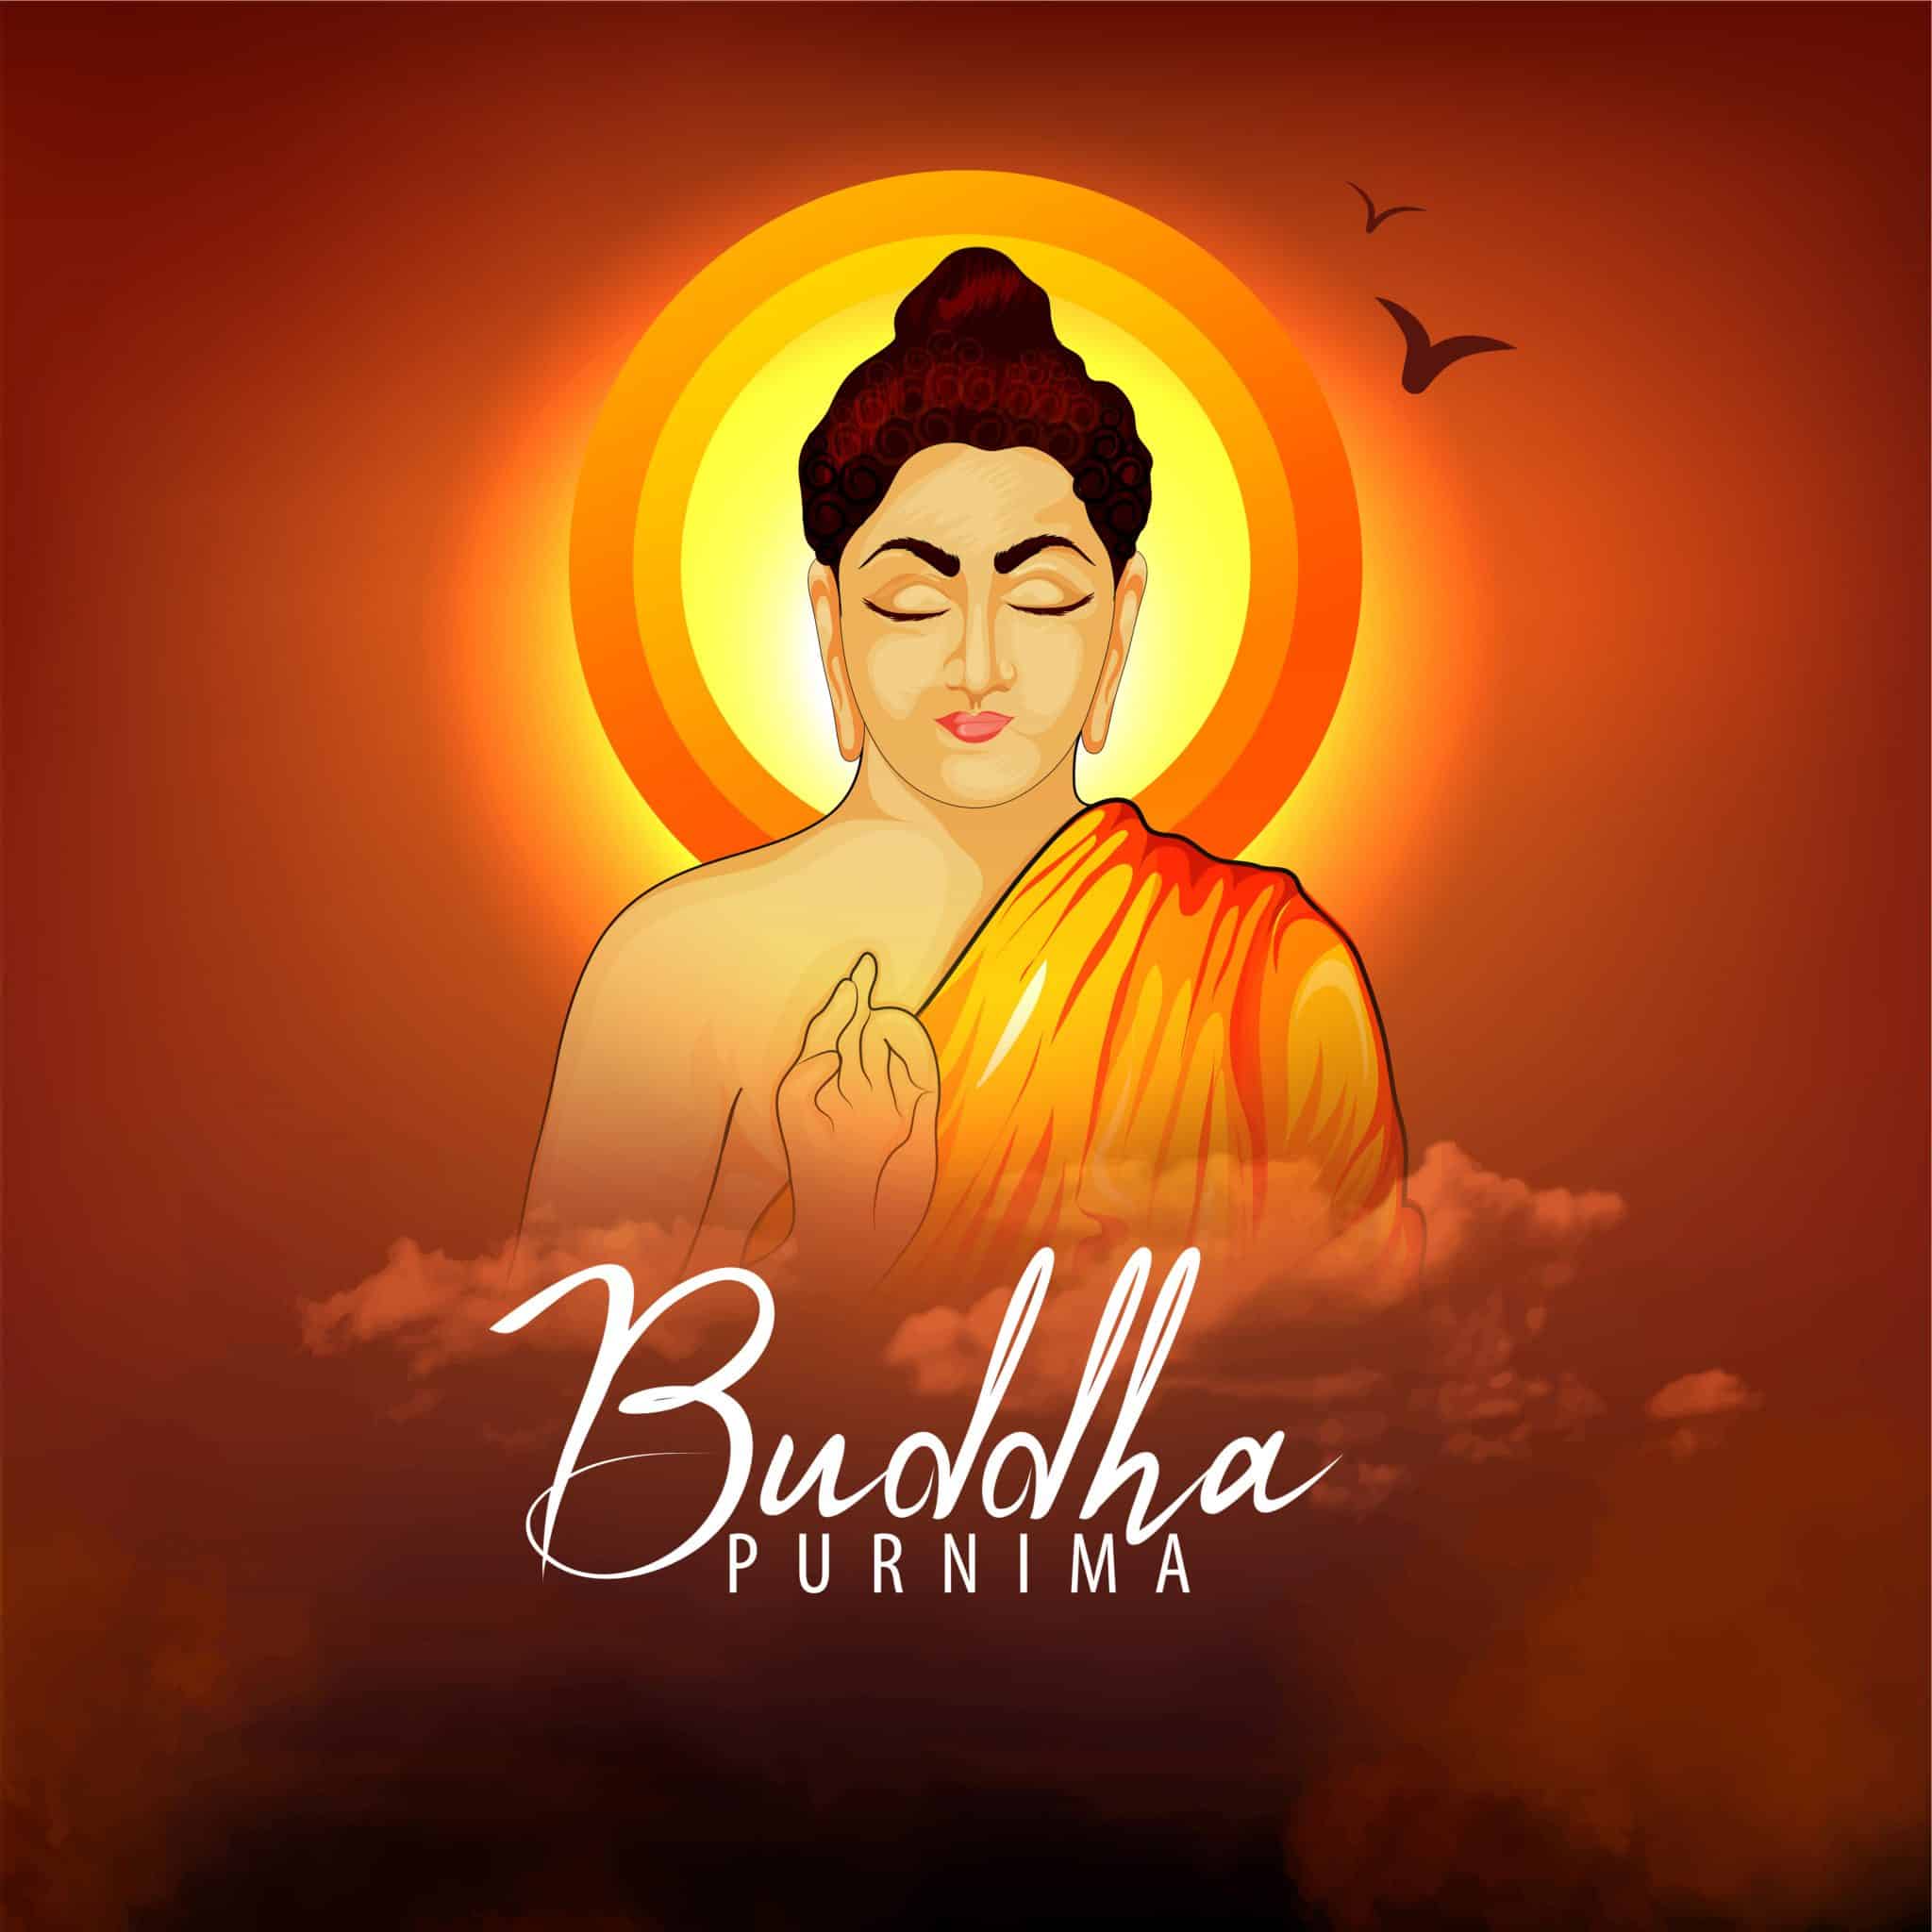 Happy Buddha Purnima Images